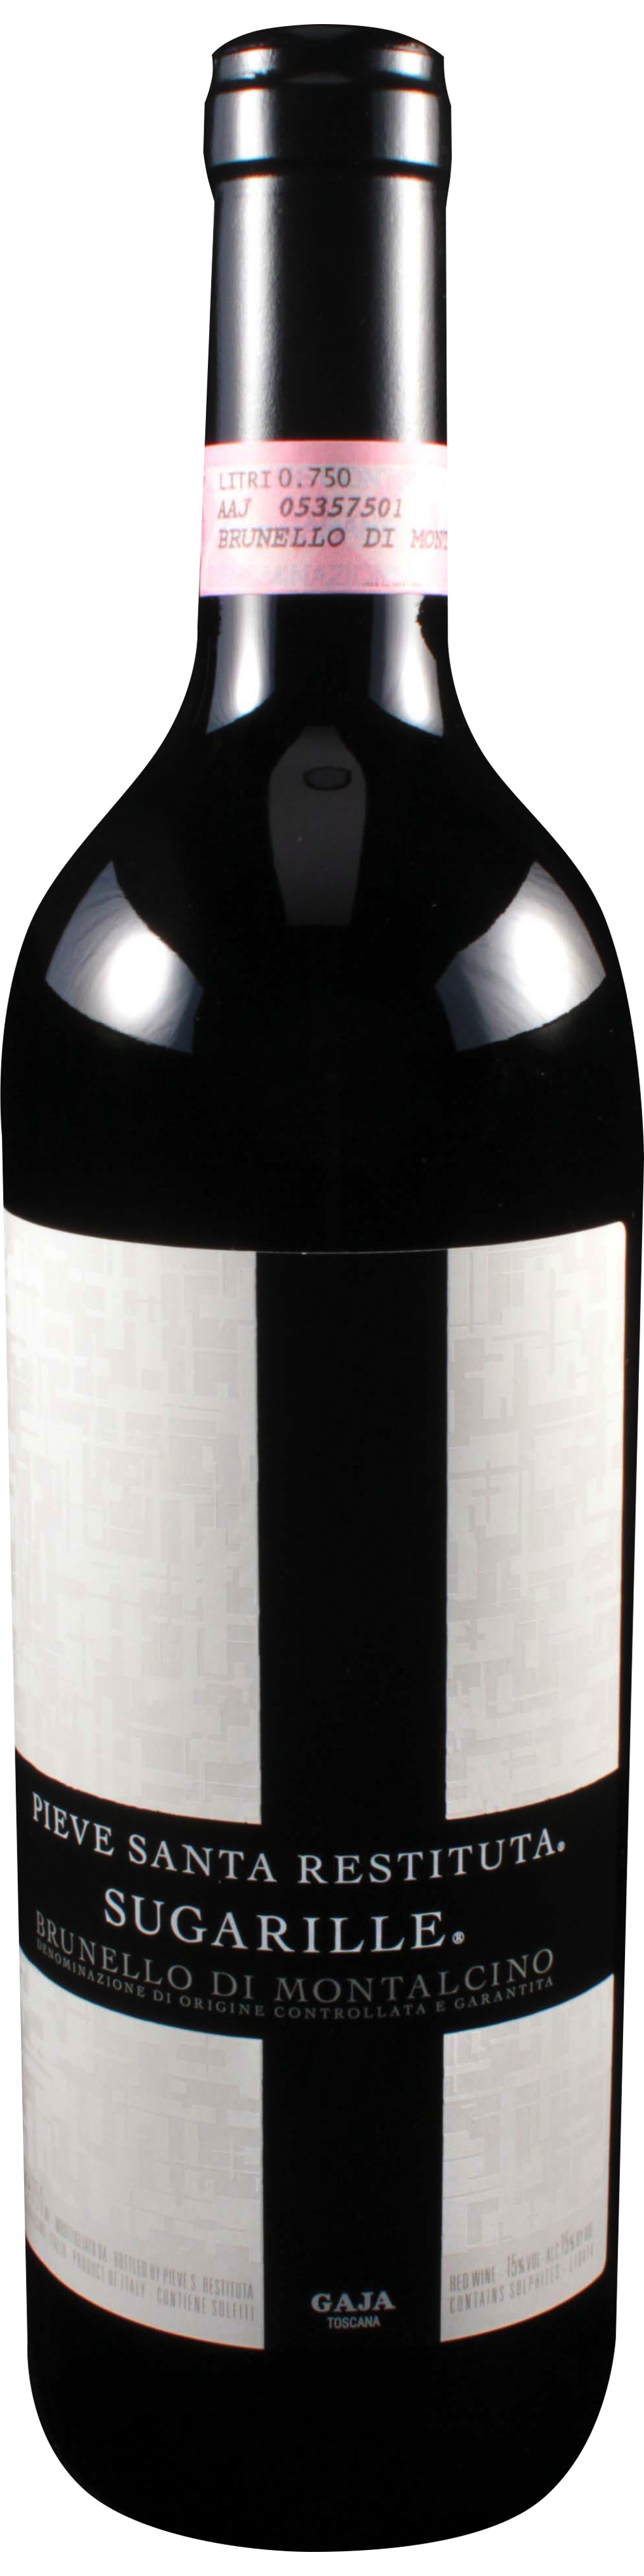 Bottle shot of 2008 Brunello di Montalcino Sugarille